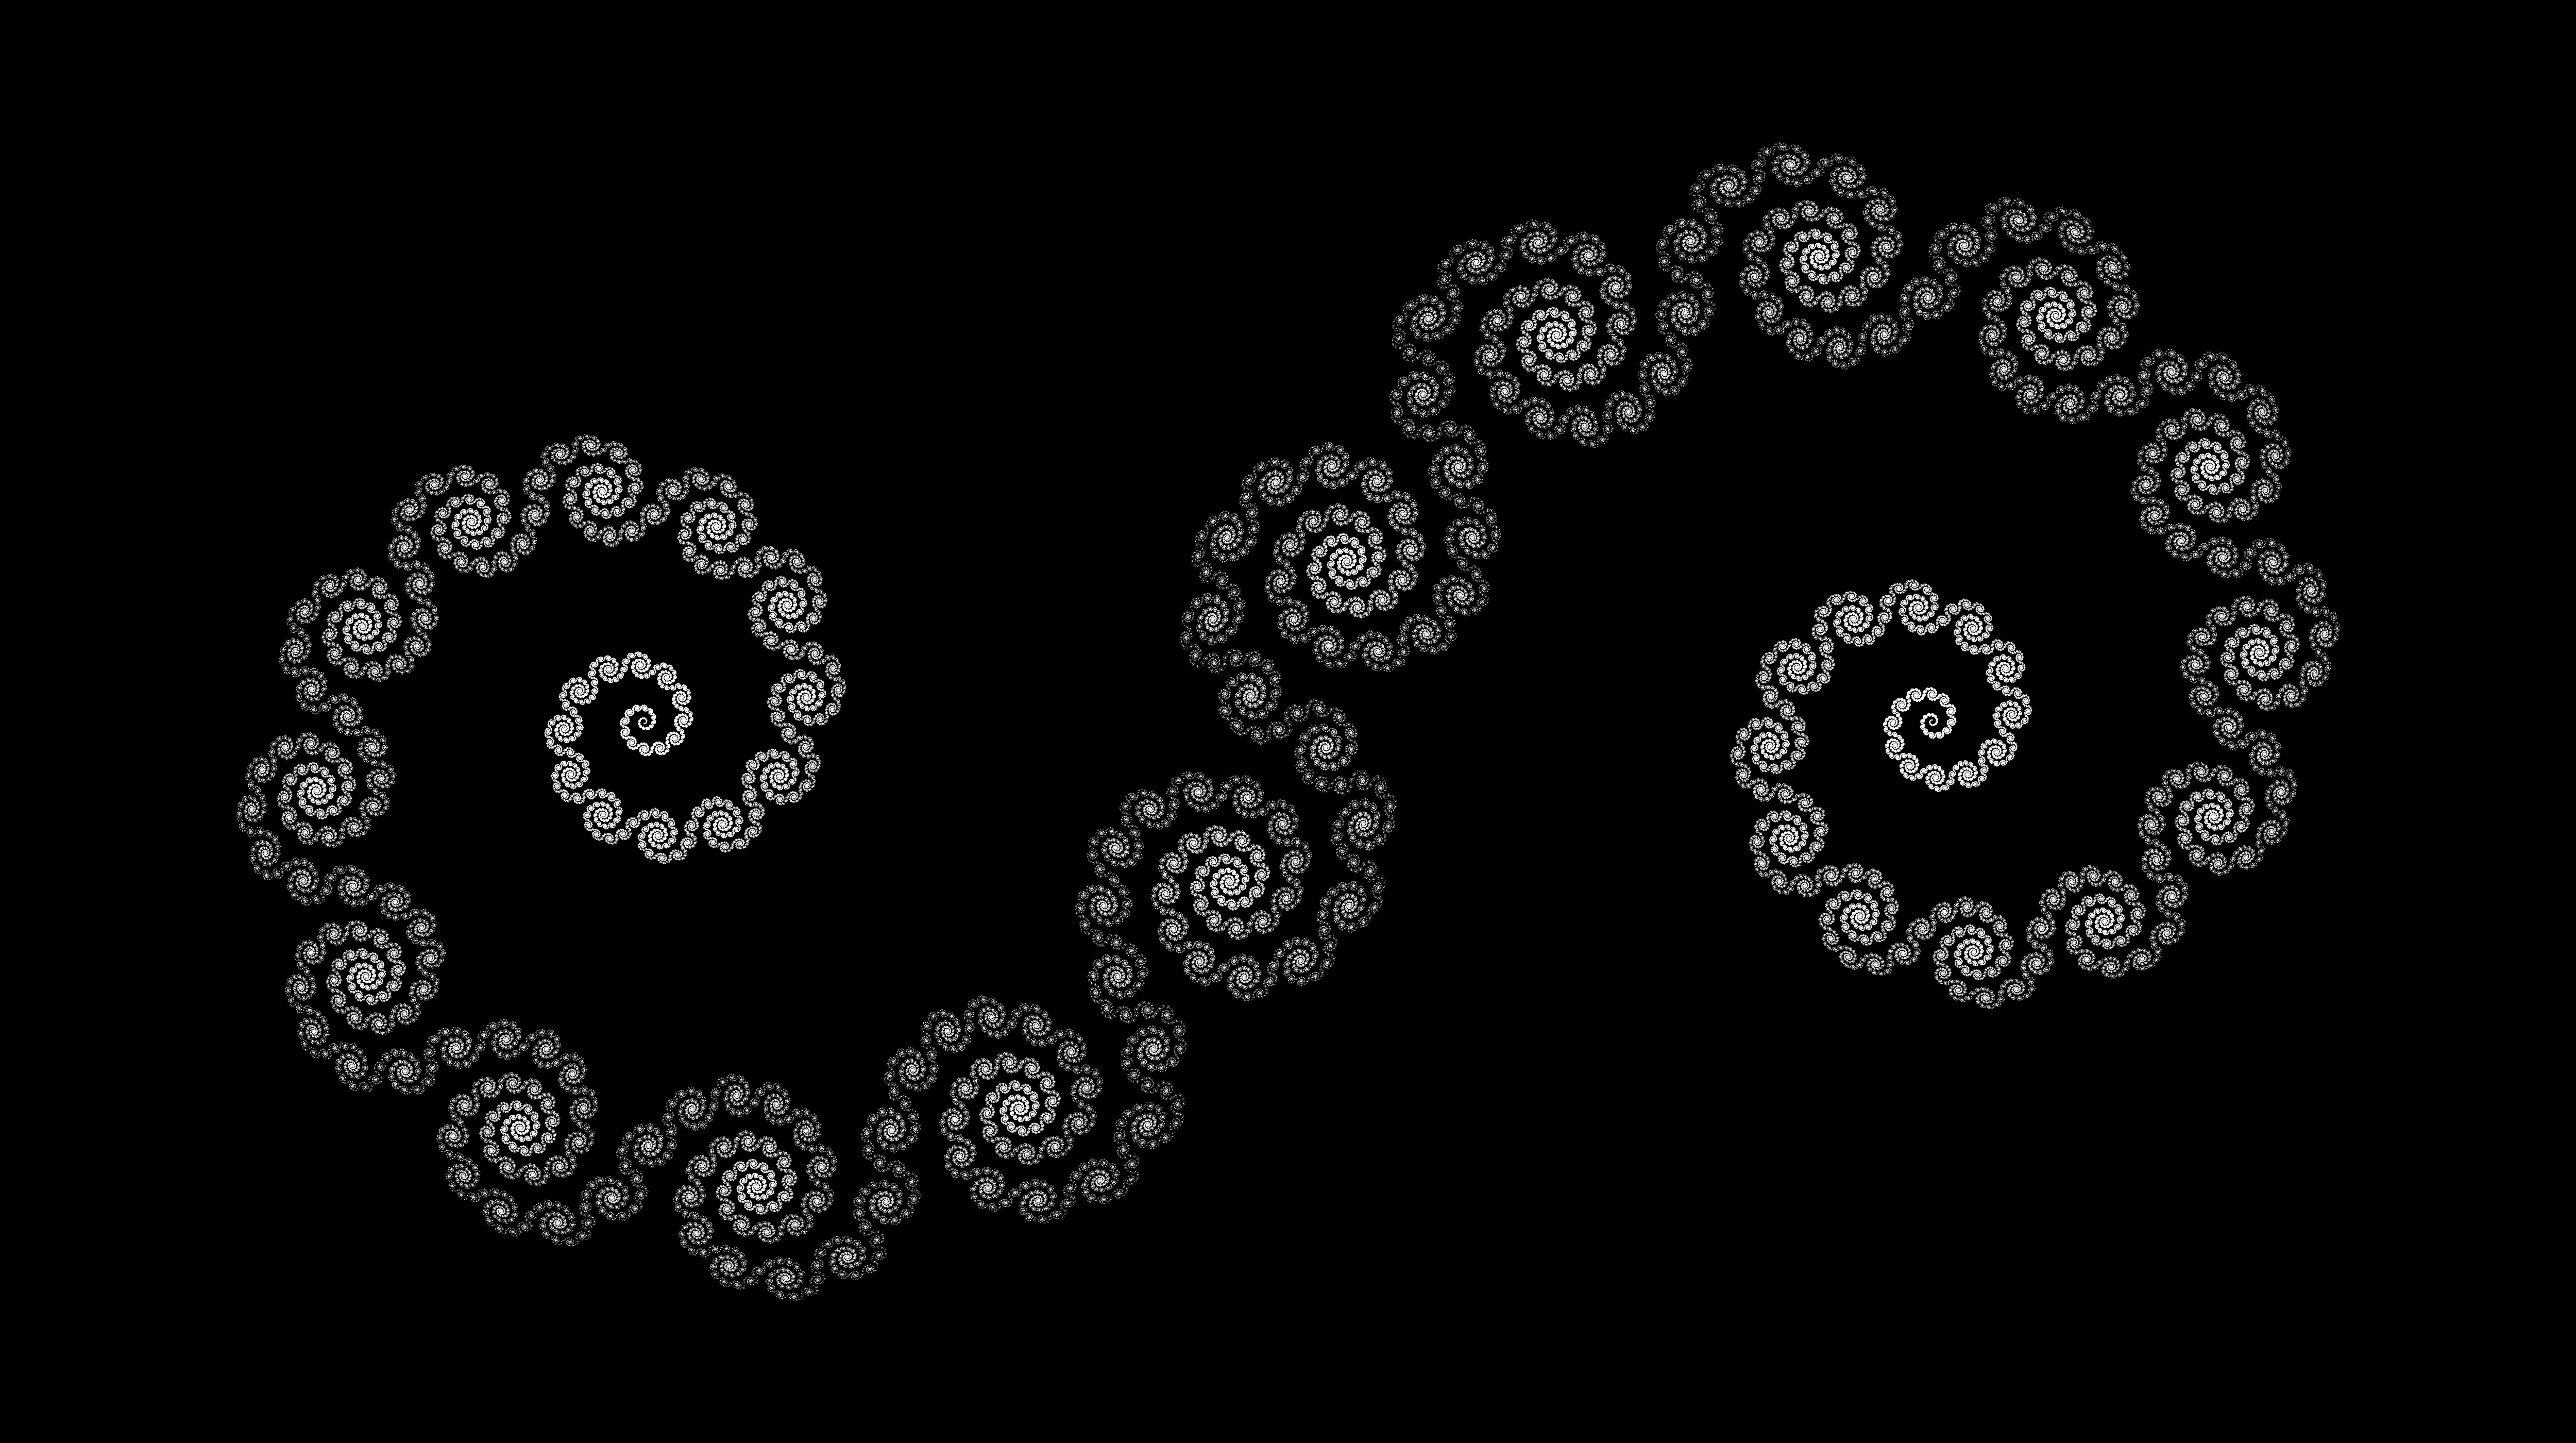 Full fractal